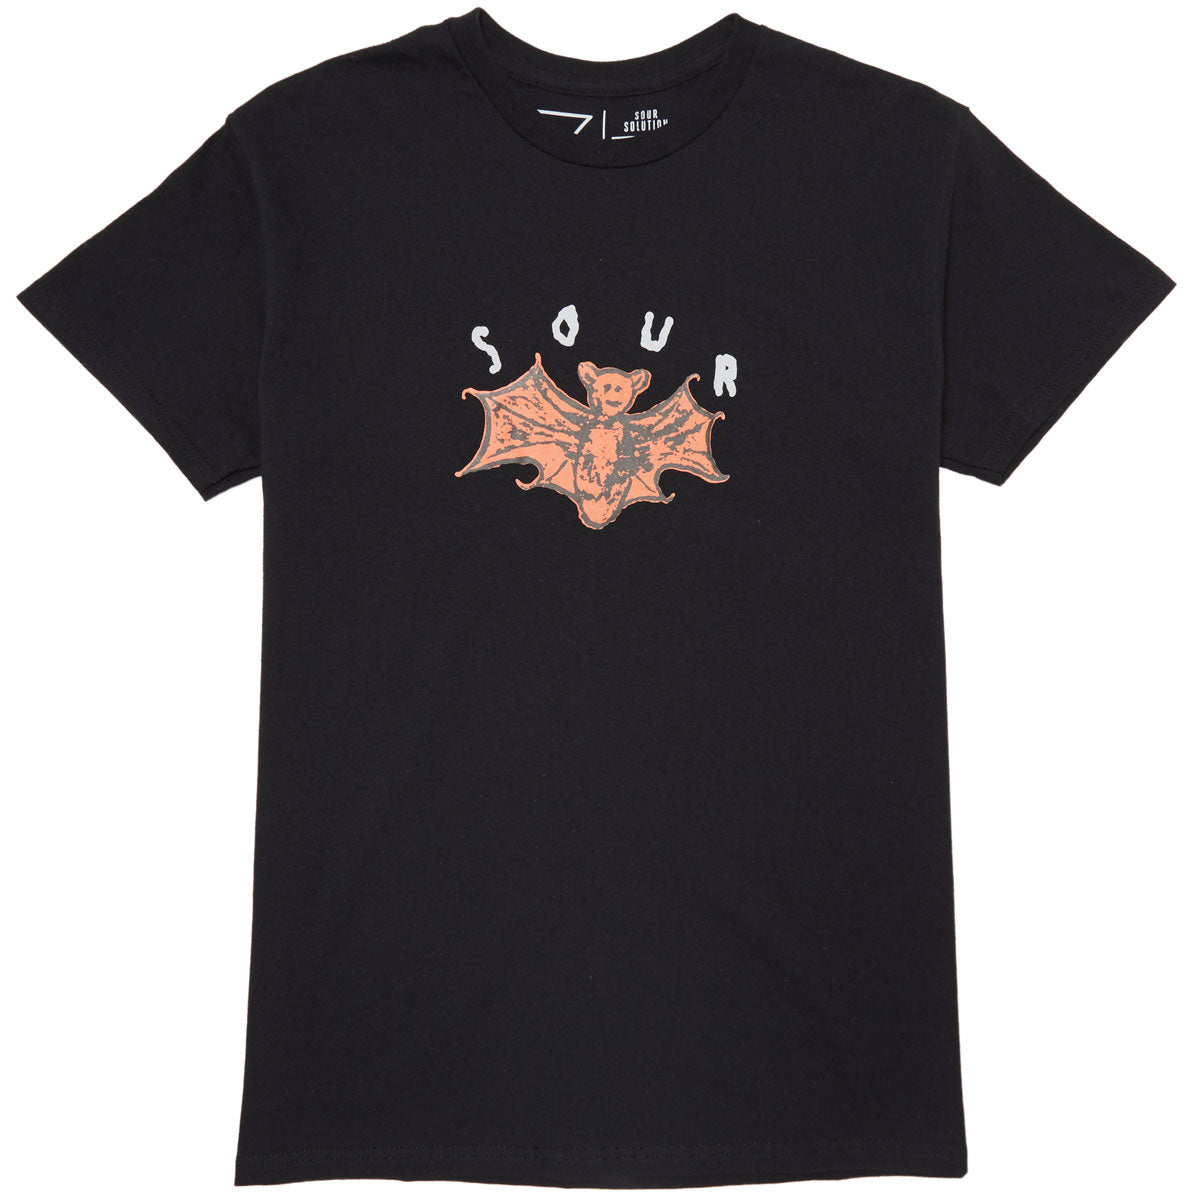 Sour Solution Bat T-Shirt - Black image 1